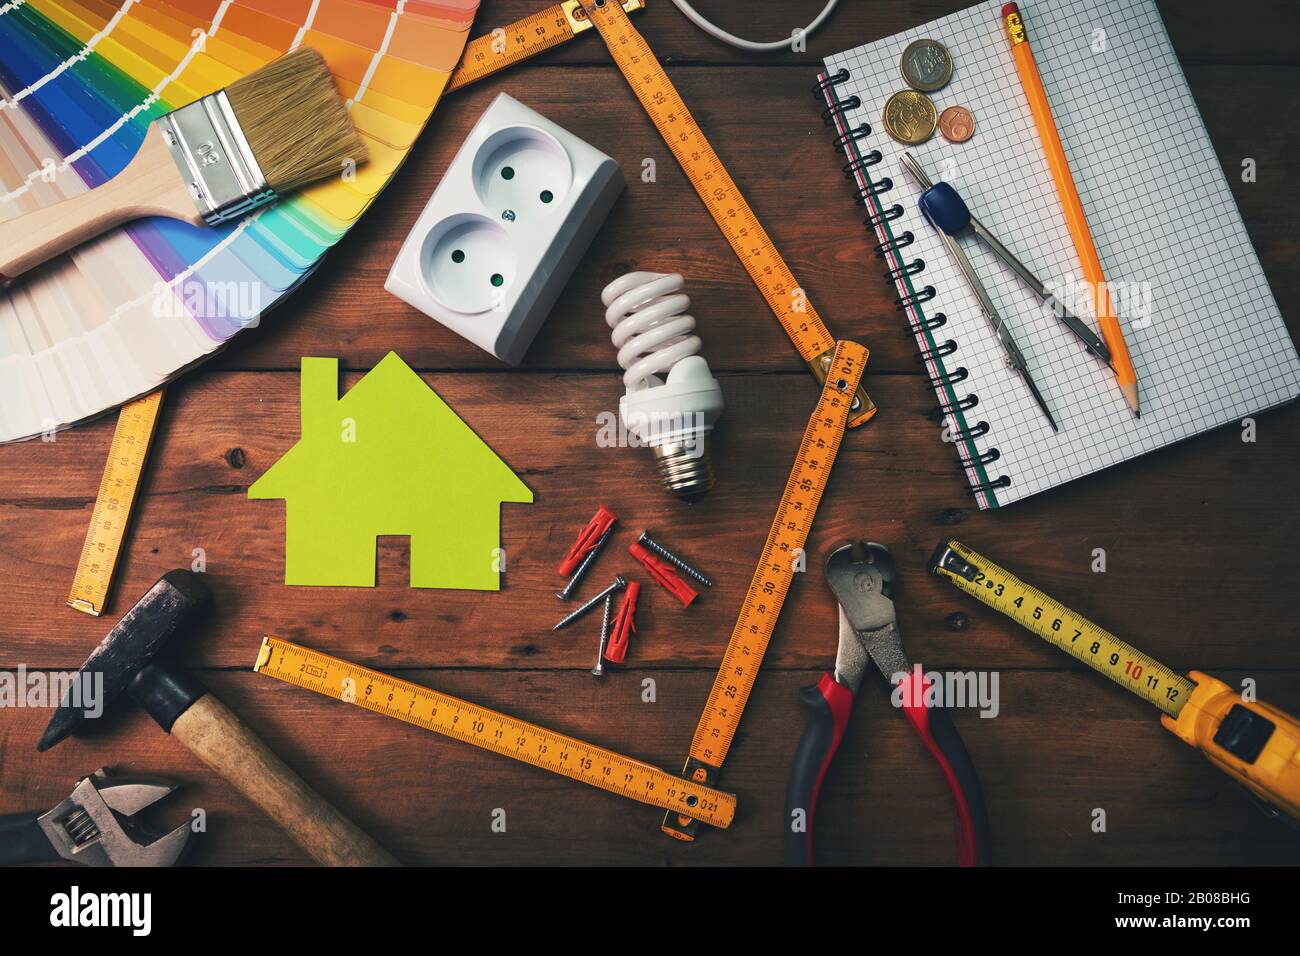 concept d'amélioration et de réparation à domicile - outils de travail et objets sur table en bois. vue de dessus Banque D'Images